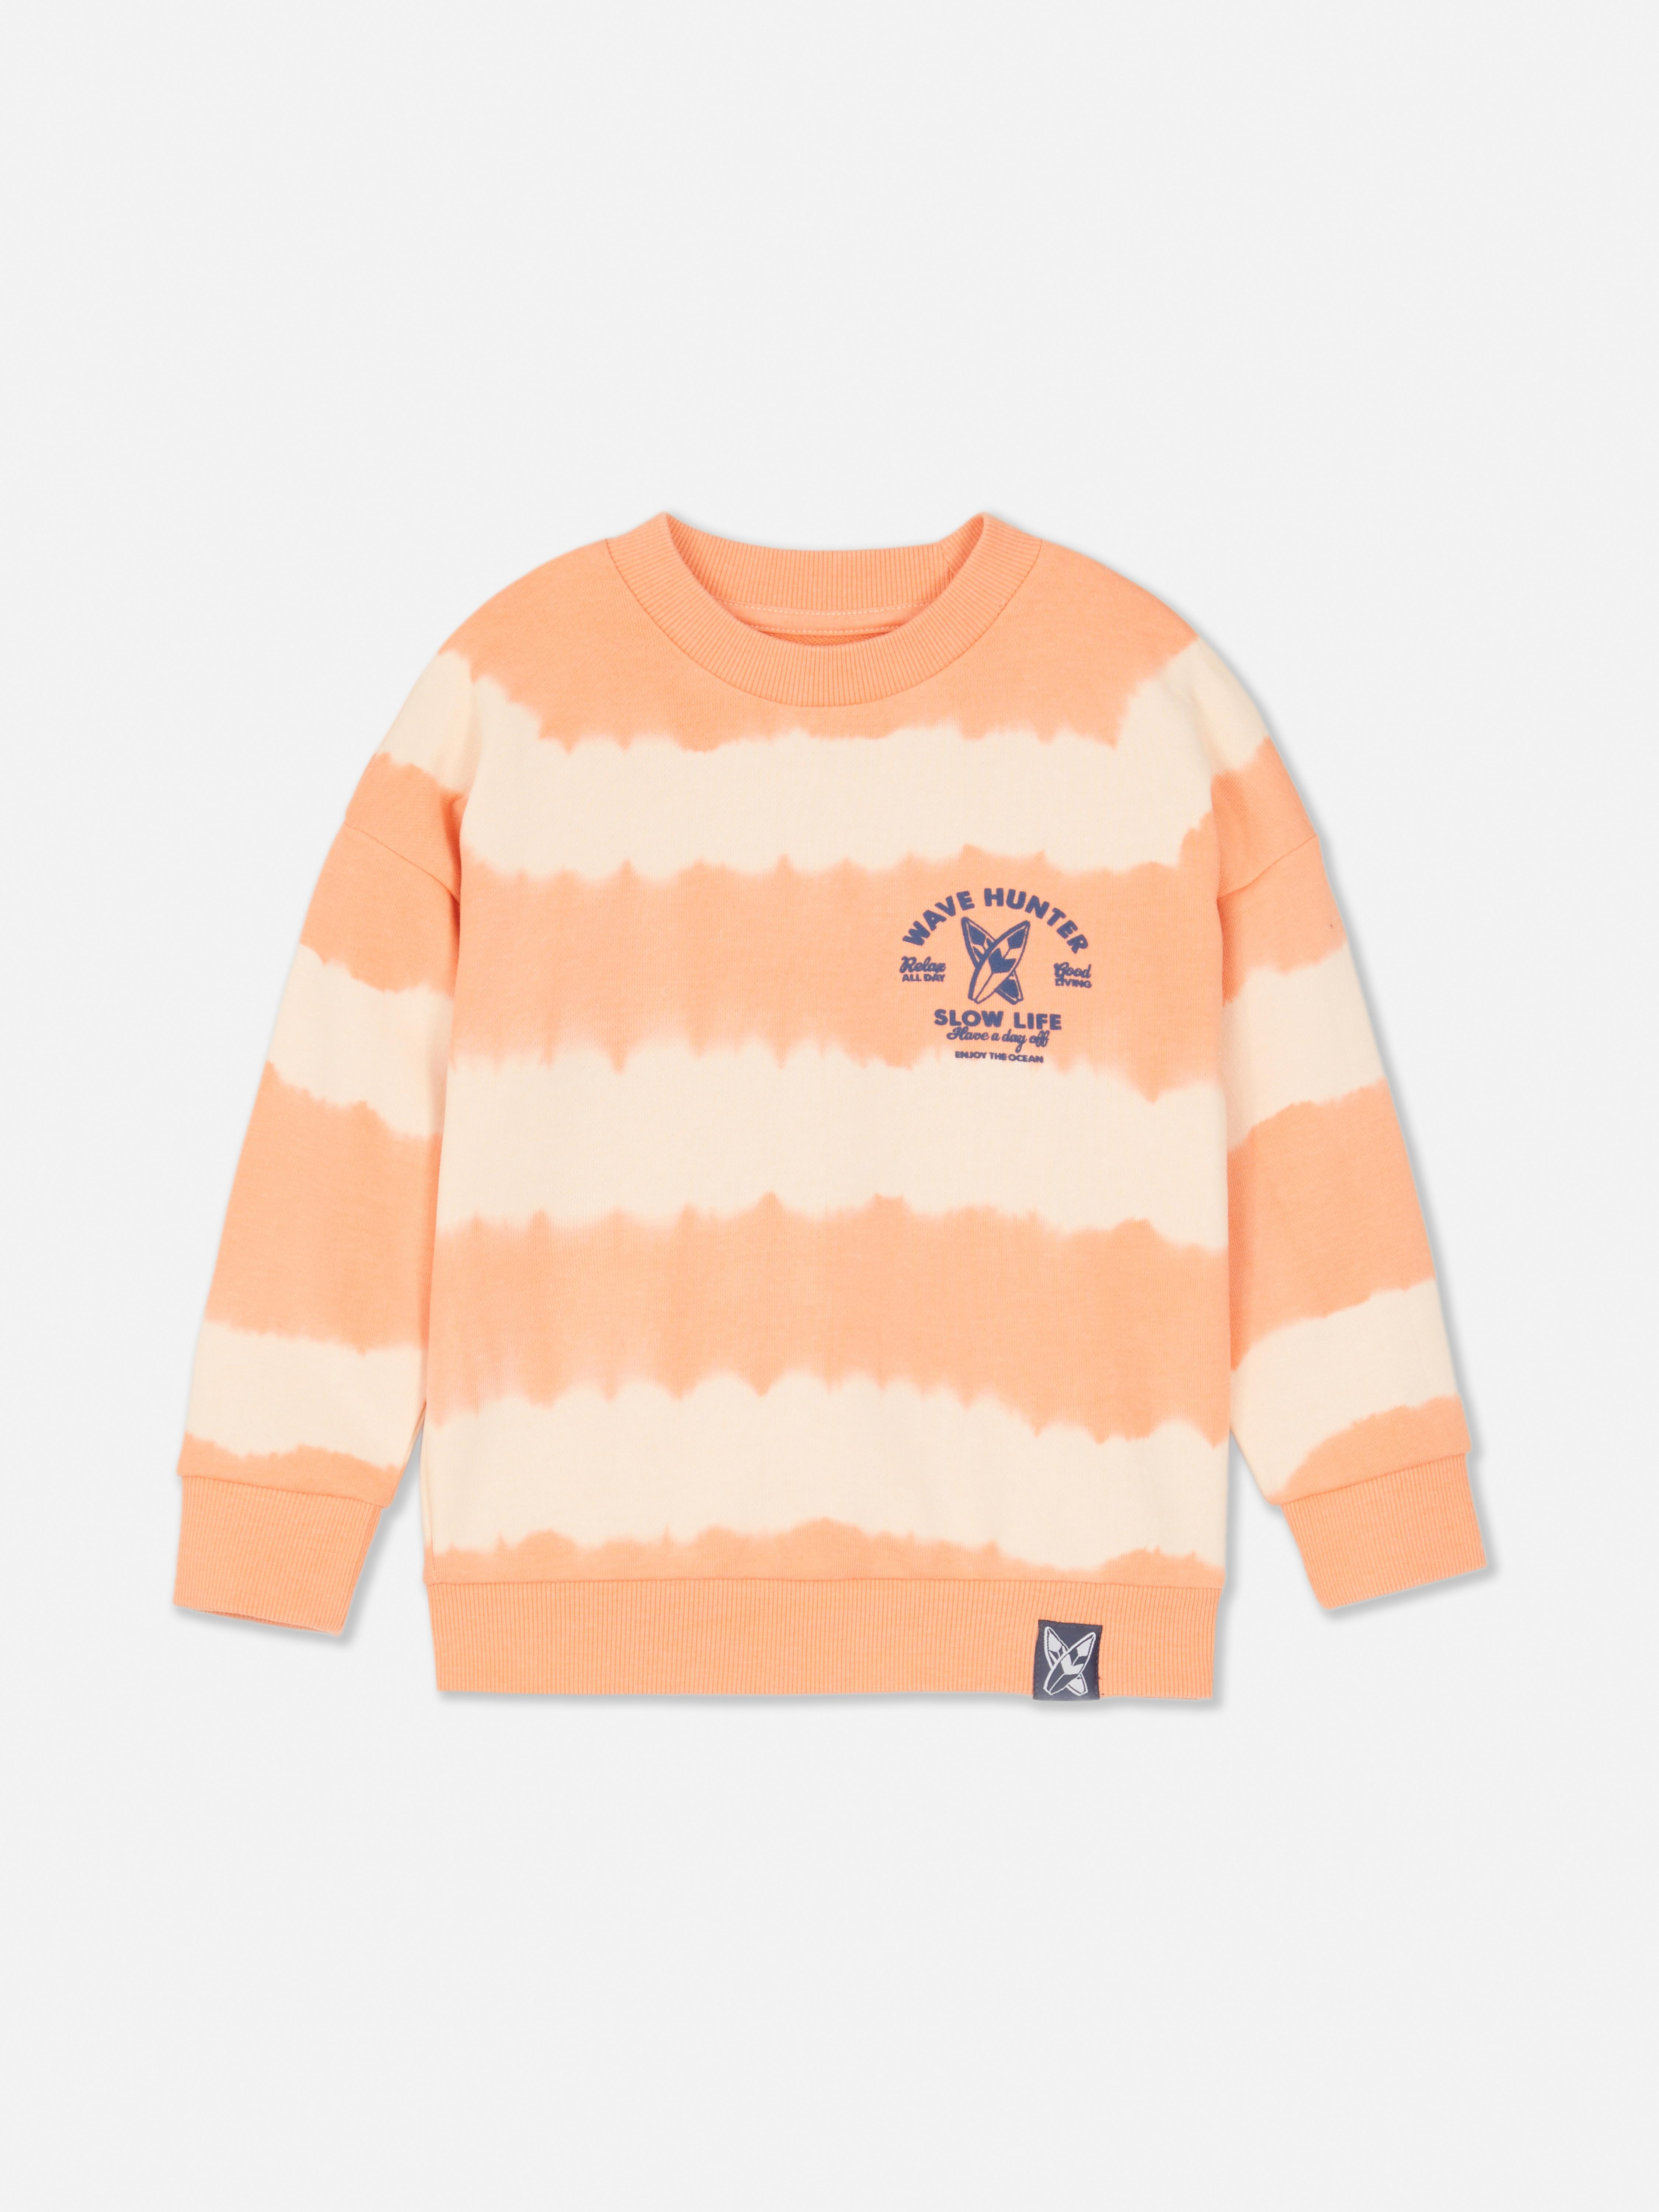 Gestreept sweatshirt met Wave Hunter-print